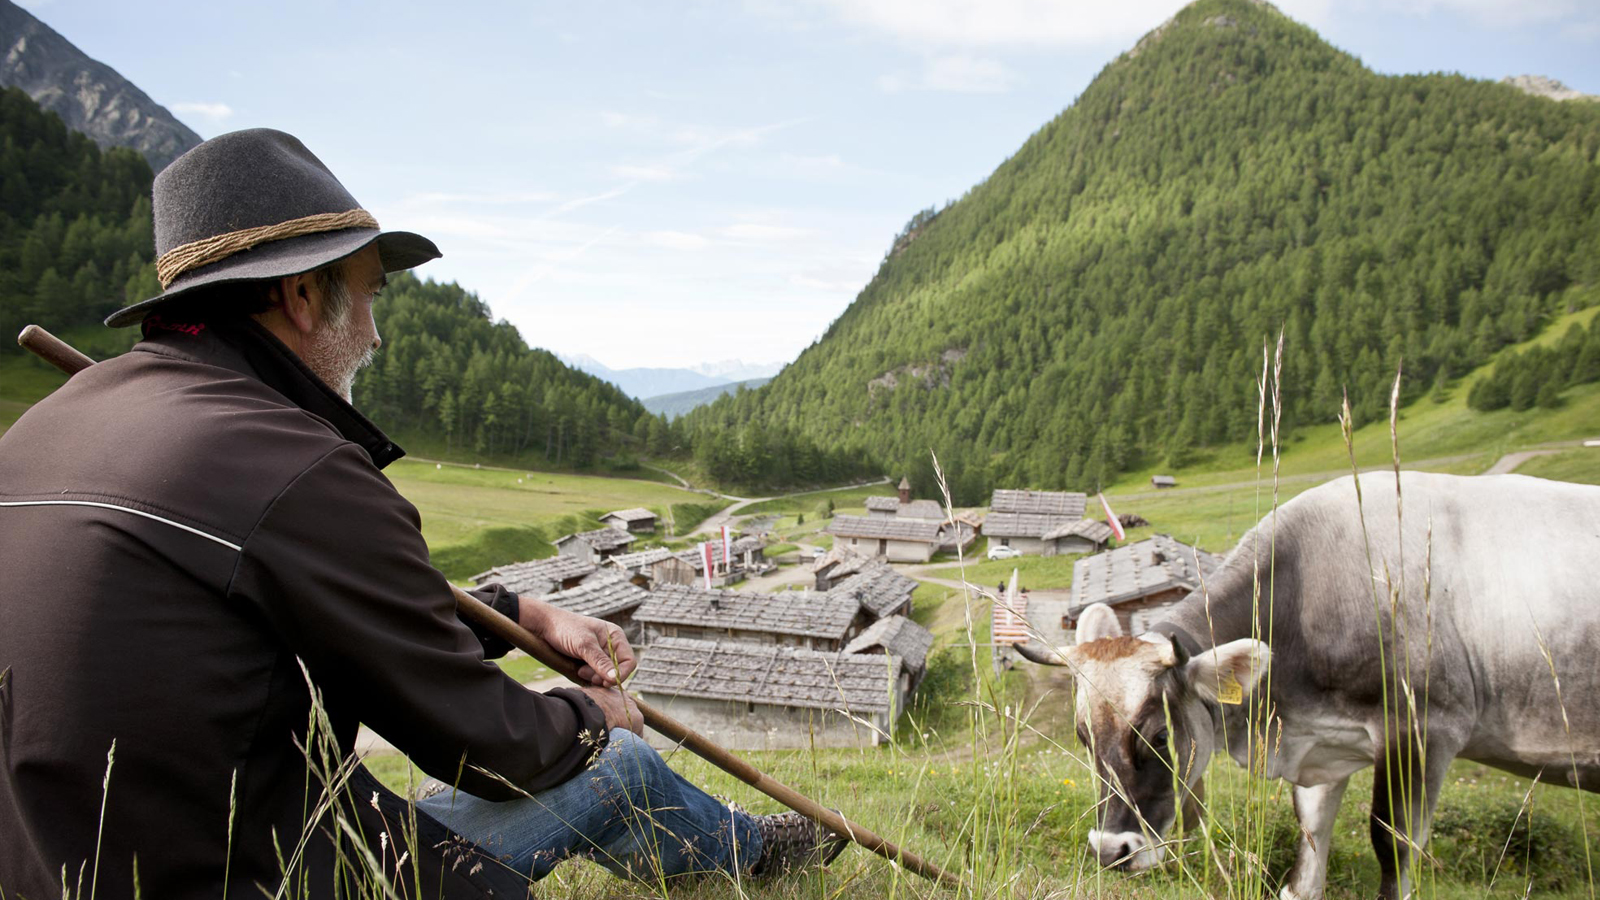 Dettaglio di un pastore seduto sull'erba che si gode la vista sulla valle